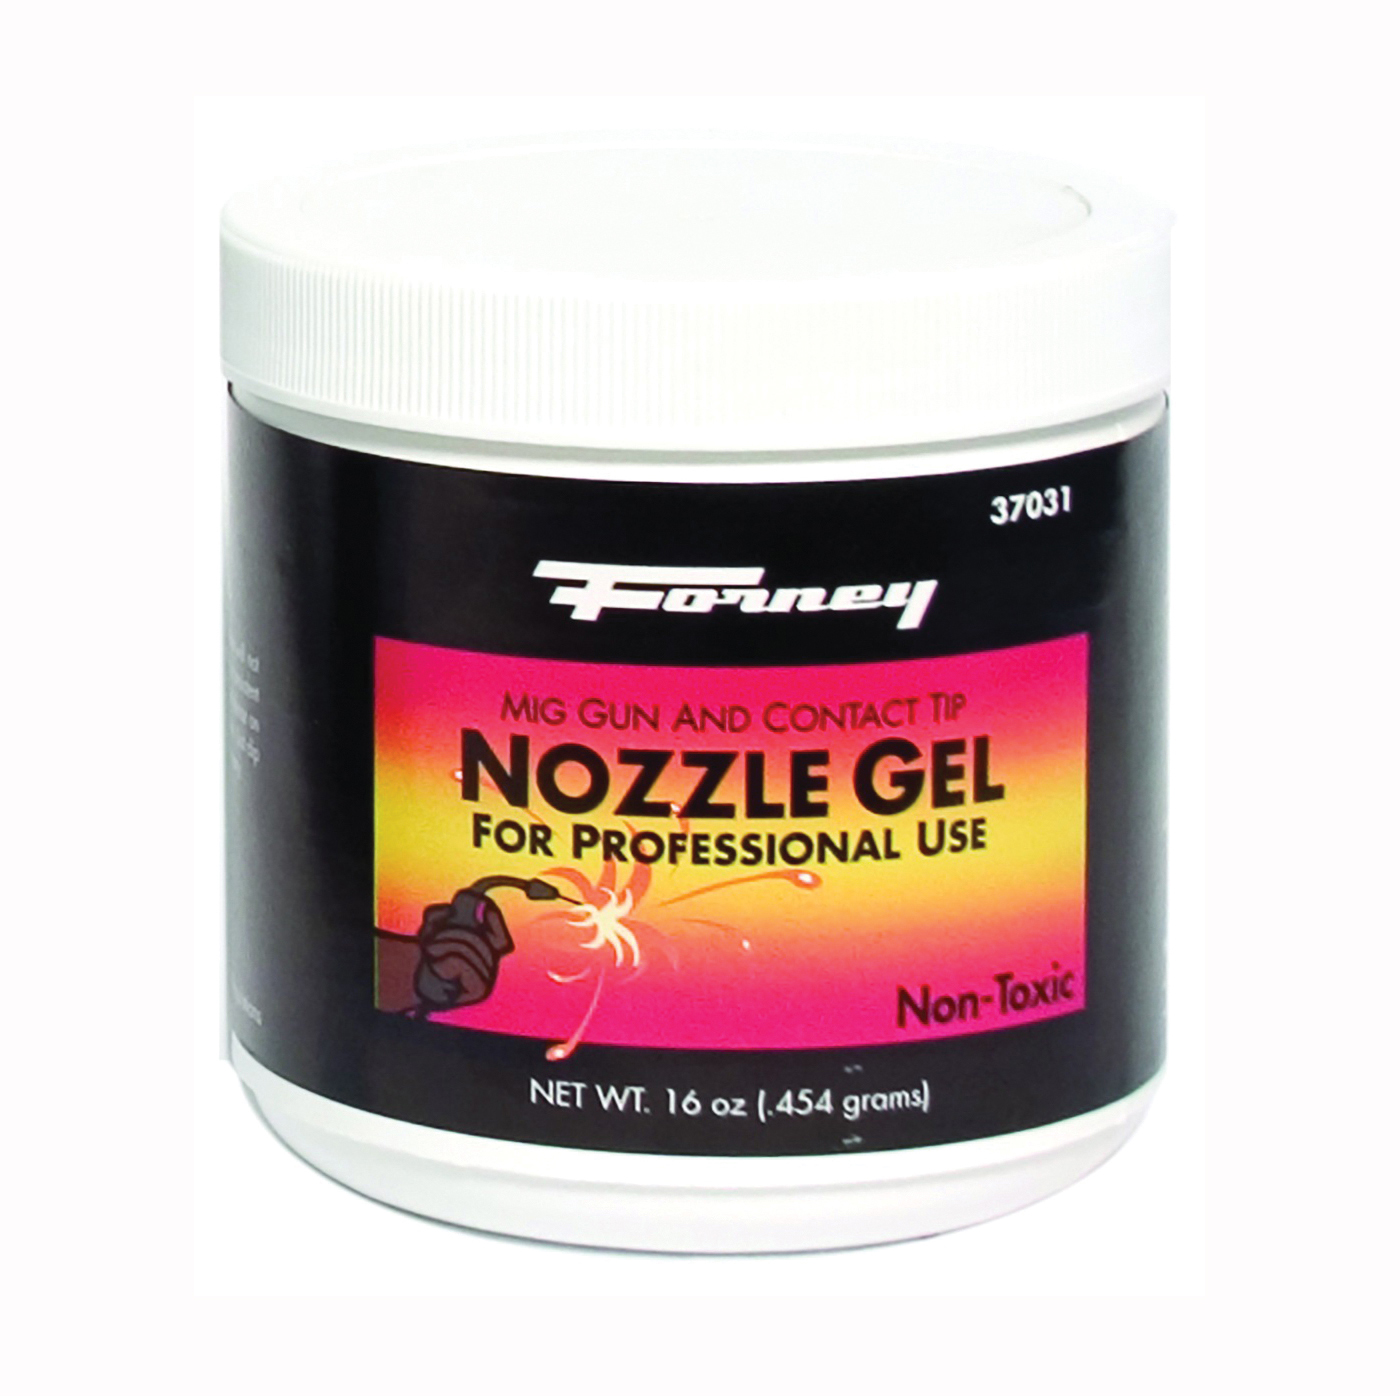 37031 Nozzle Gel, 16 oz